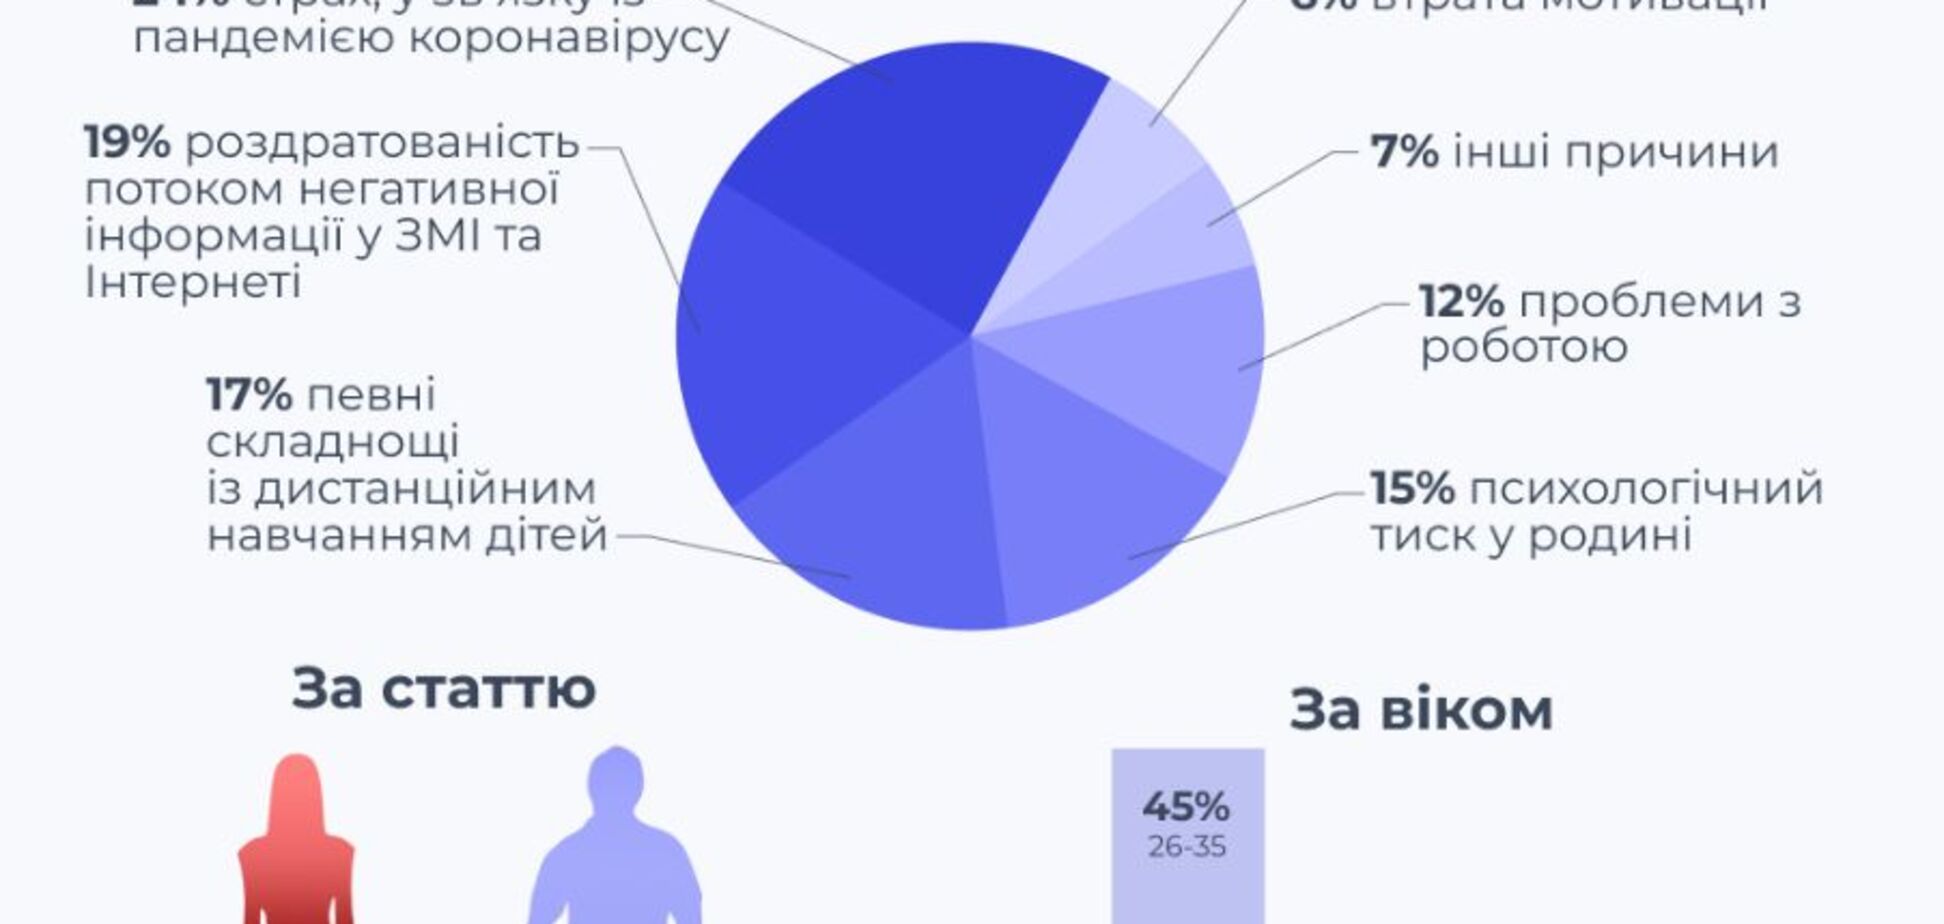 В Киеве набирает популярность платформа эмоциональной поддержки